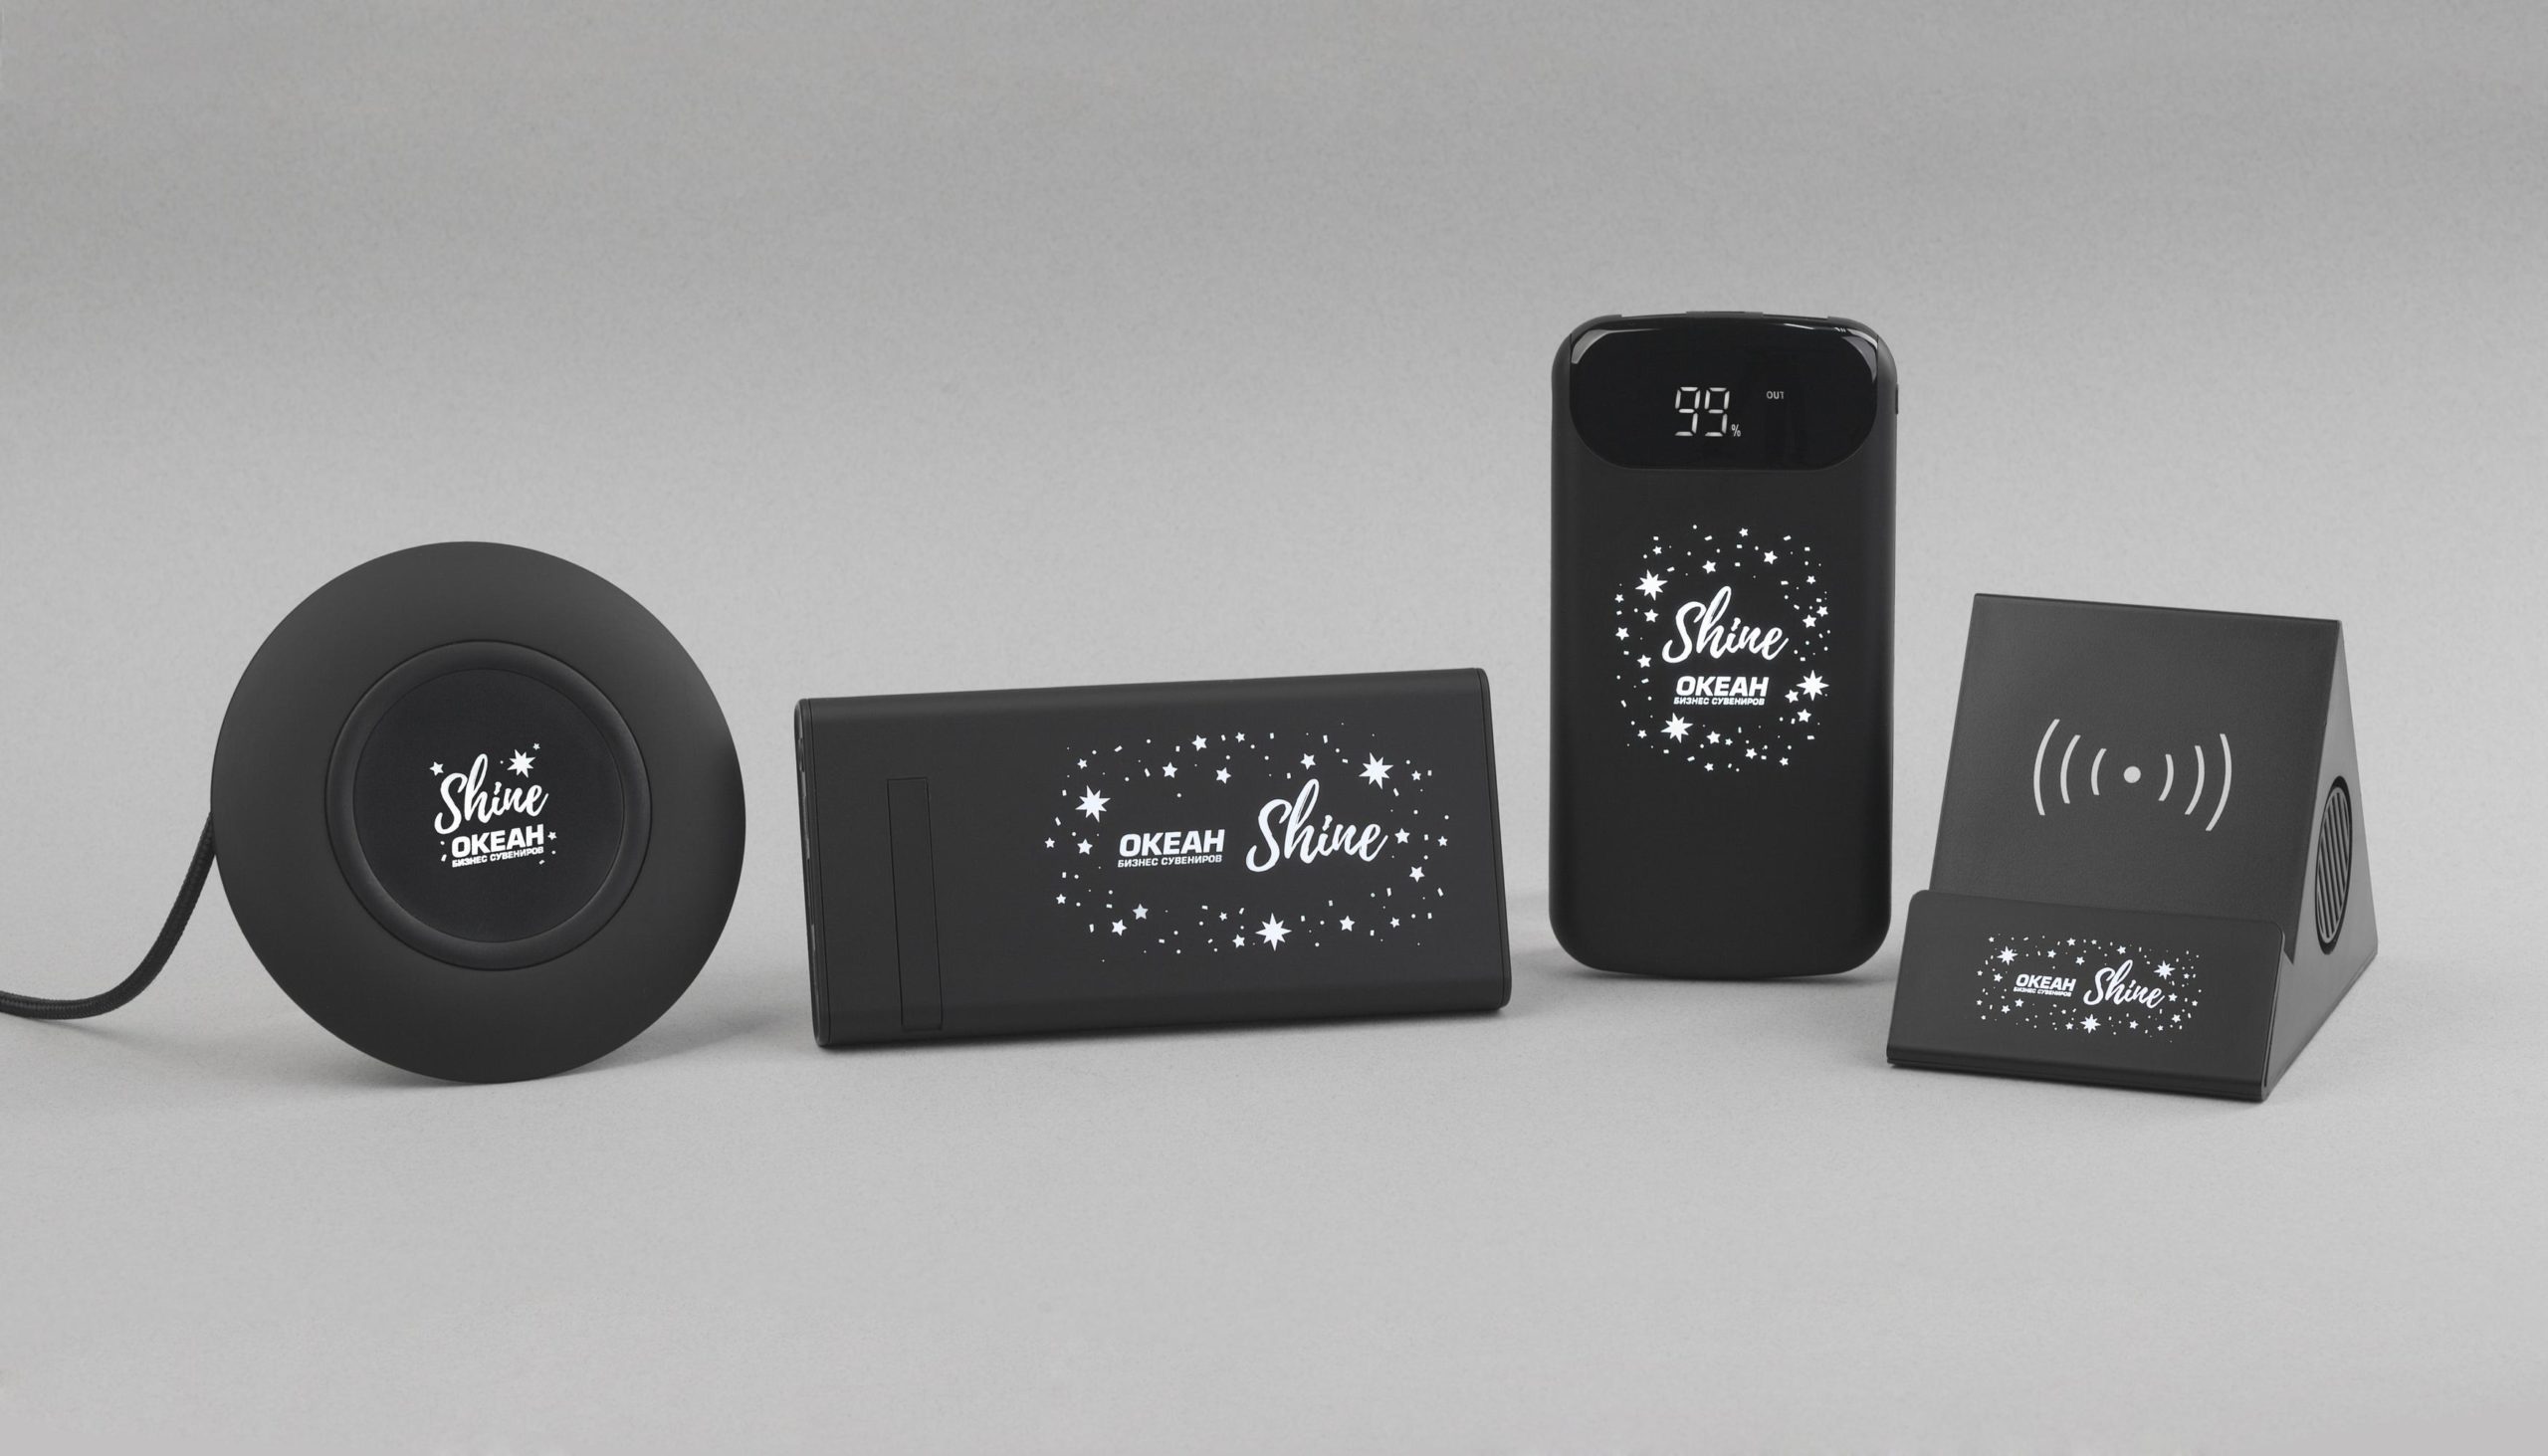 Беспроводное зарядное устройство "Shine SOFTTOUCH", 8000 mAh с подсветкой логотипа и цифровым индикатором заряда, цвет черный, фото 5